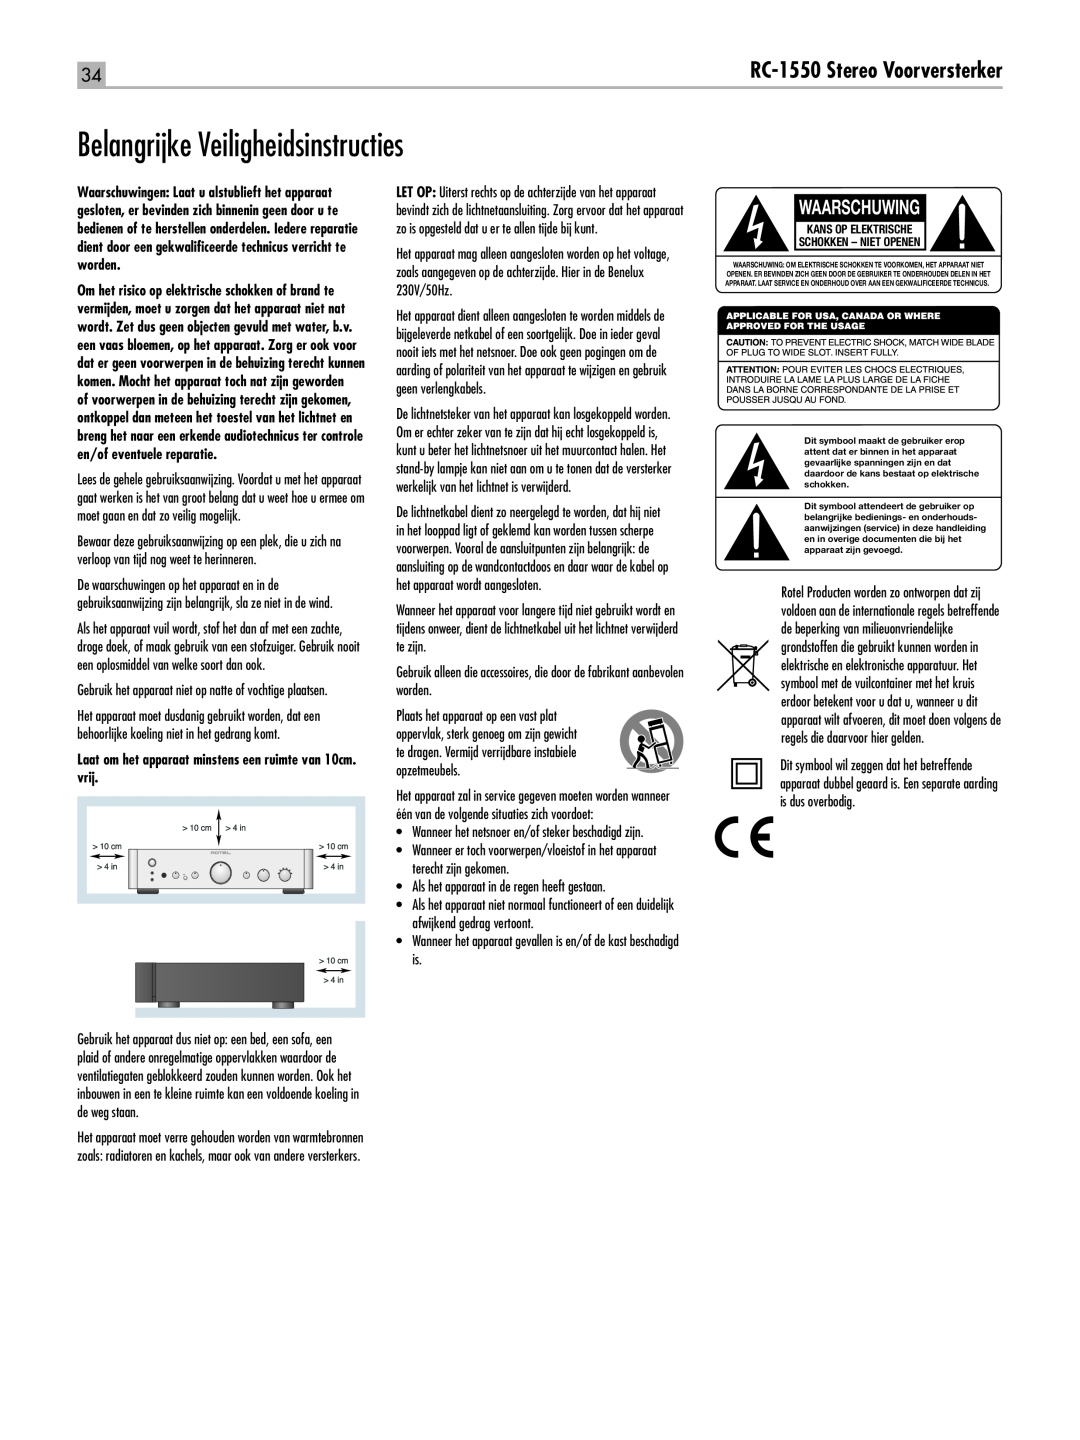 Rotel owner manual Belangrijke Veiligheidsinstructies, Waarschuwing, RC-1550Stereo Voorversterker 